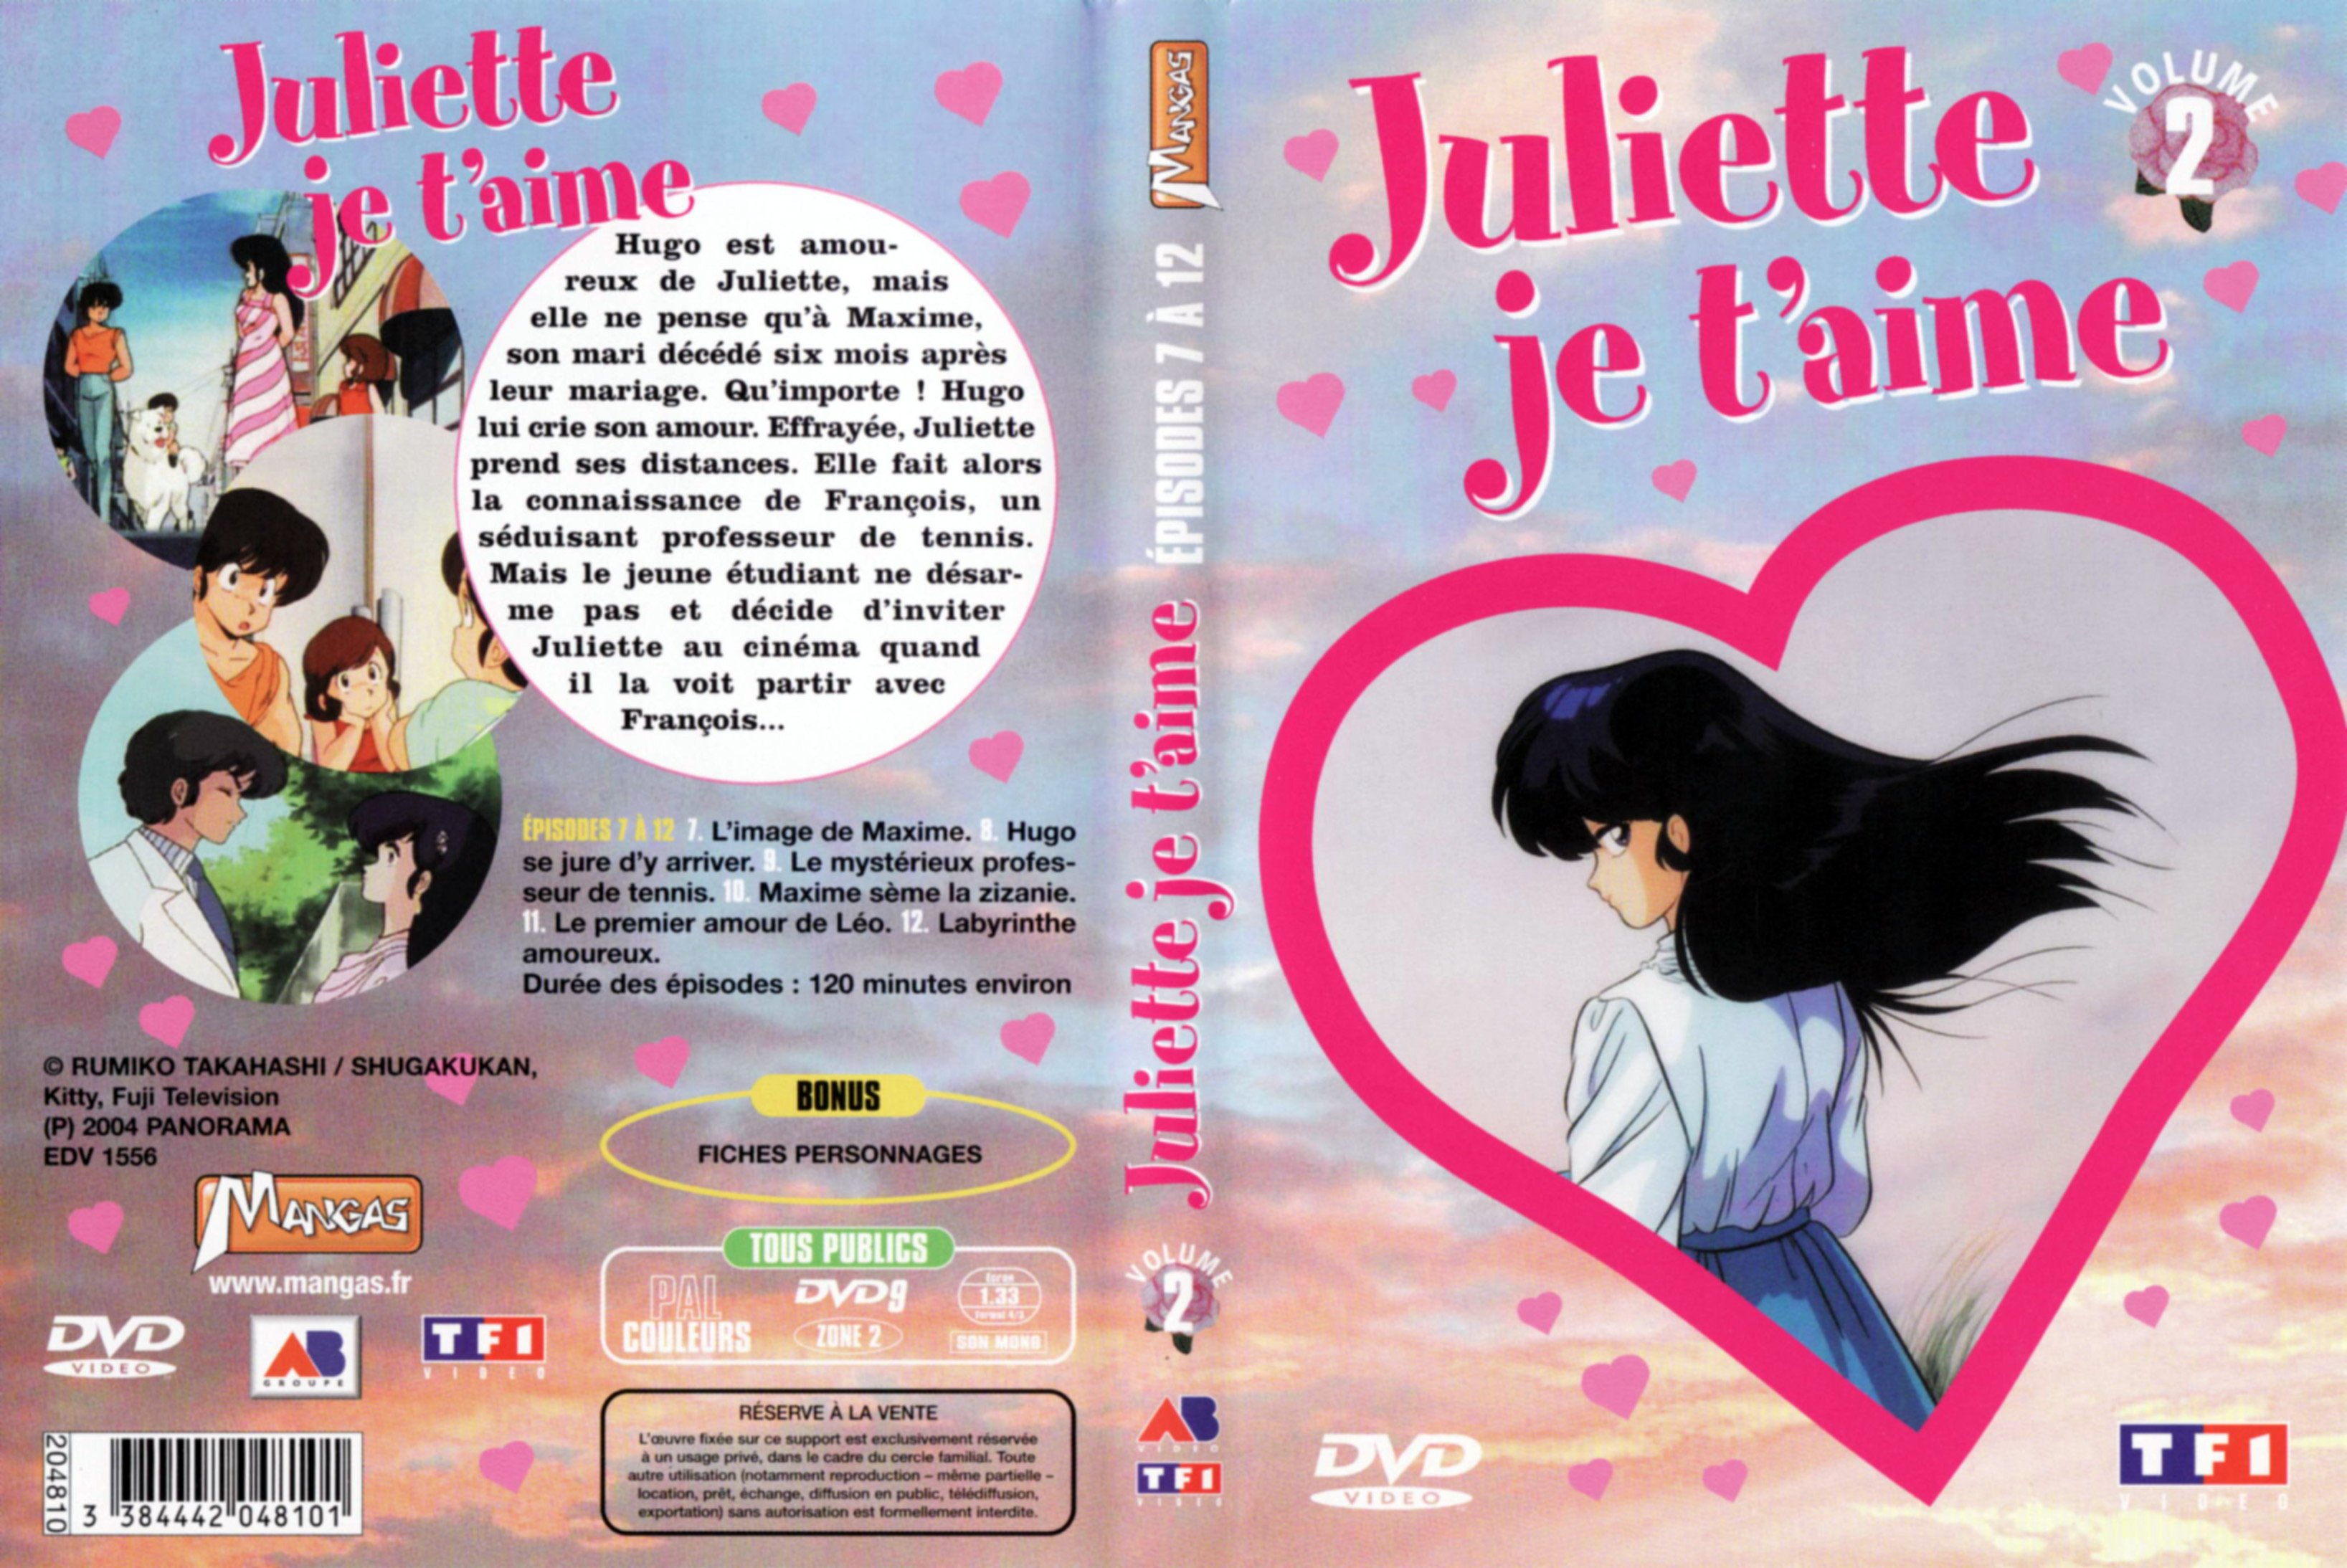 Jaquette DVD Juliette je t aime vol 02